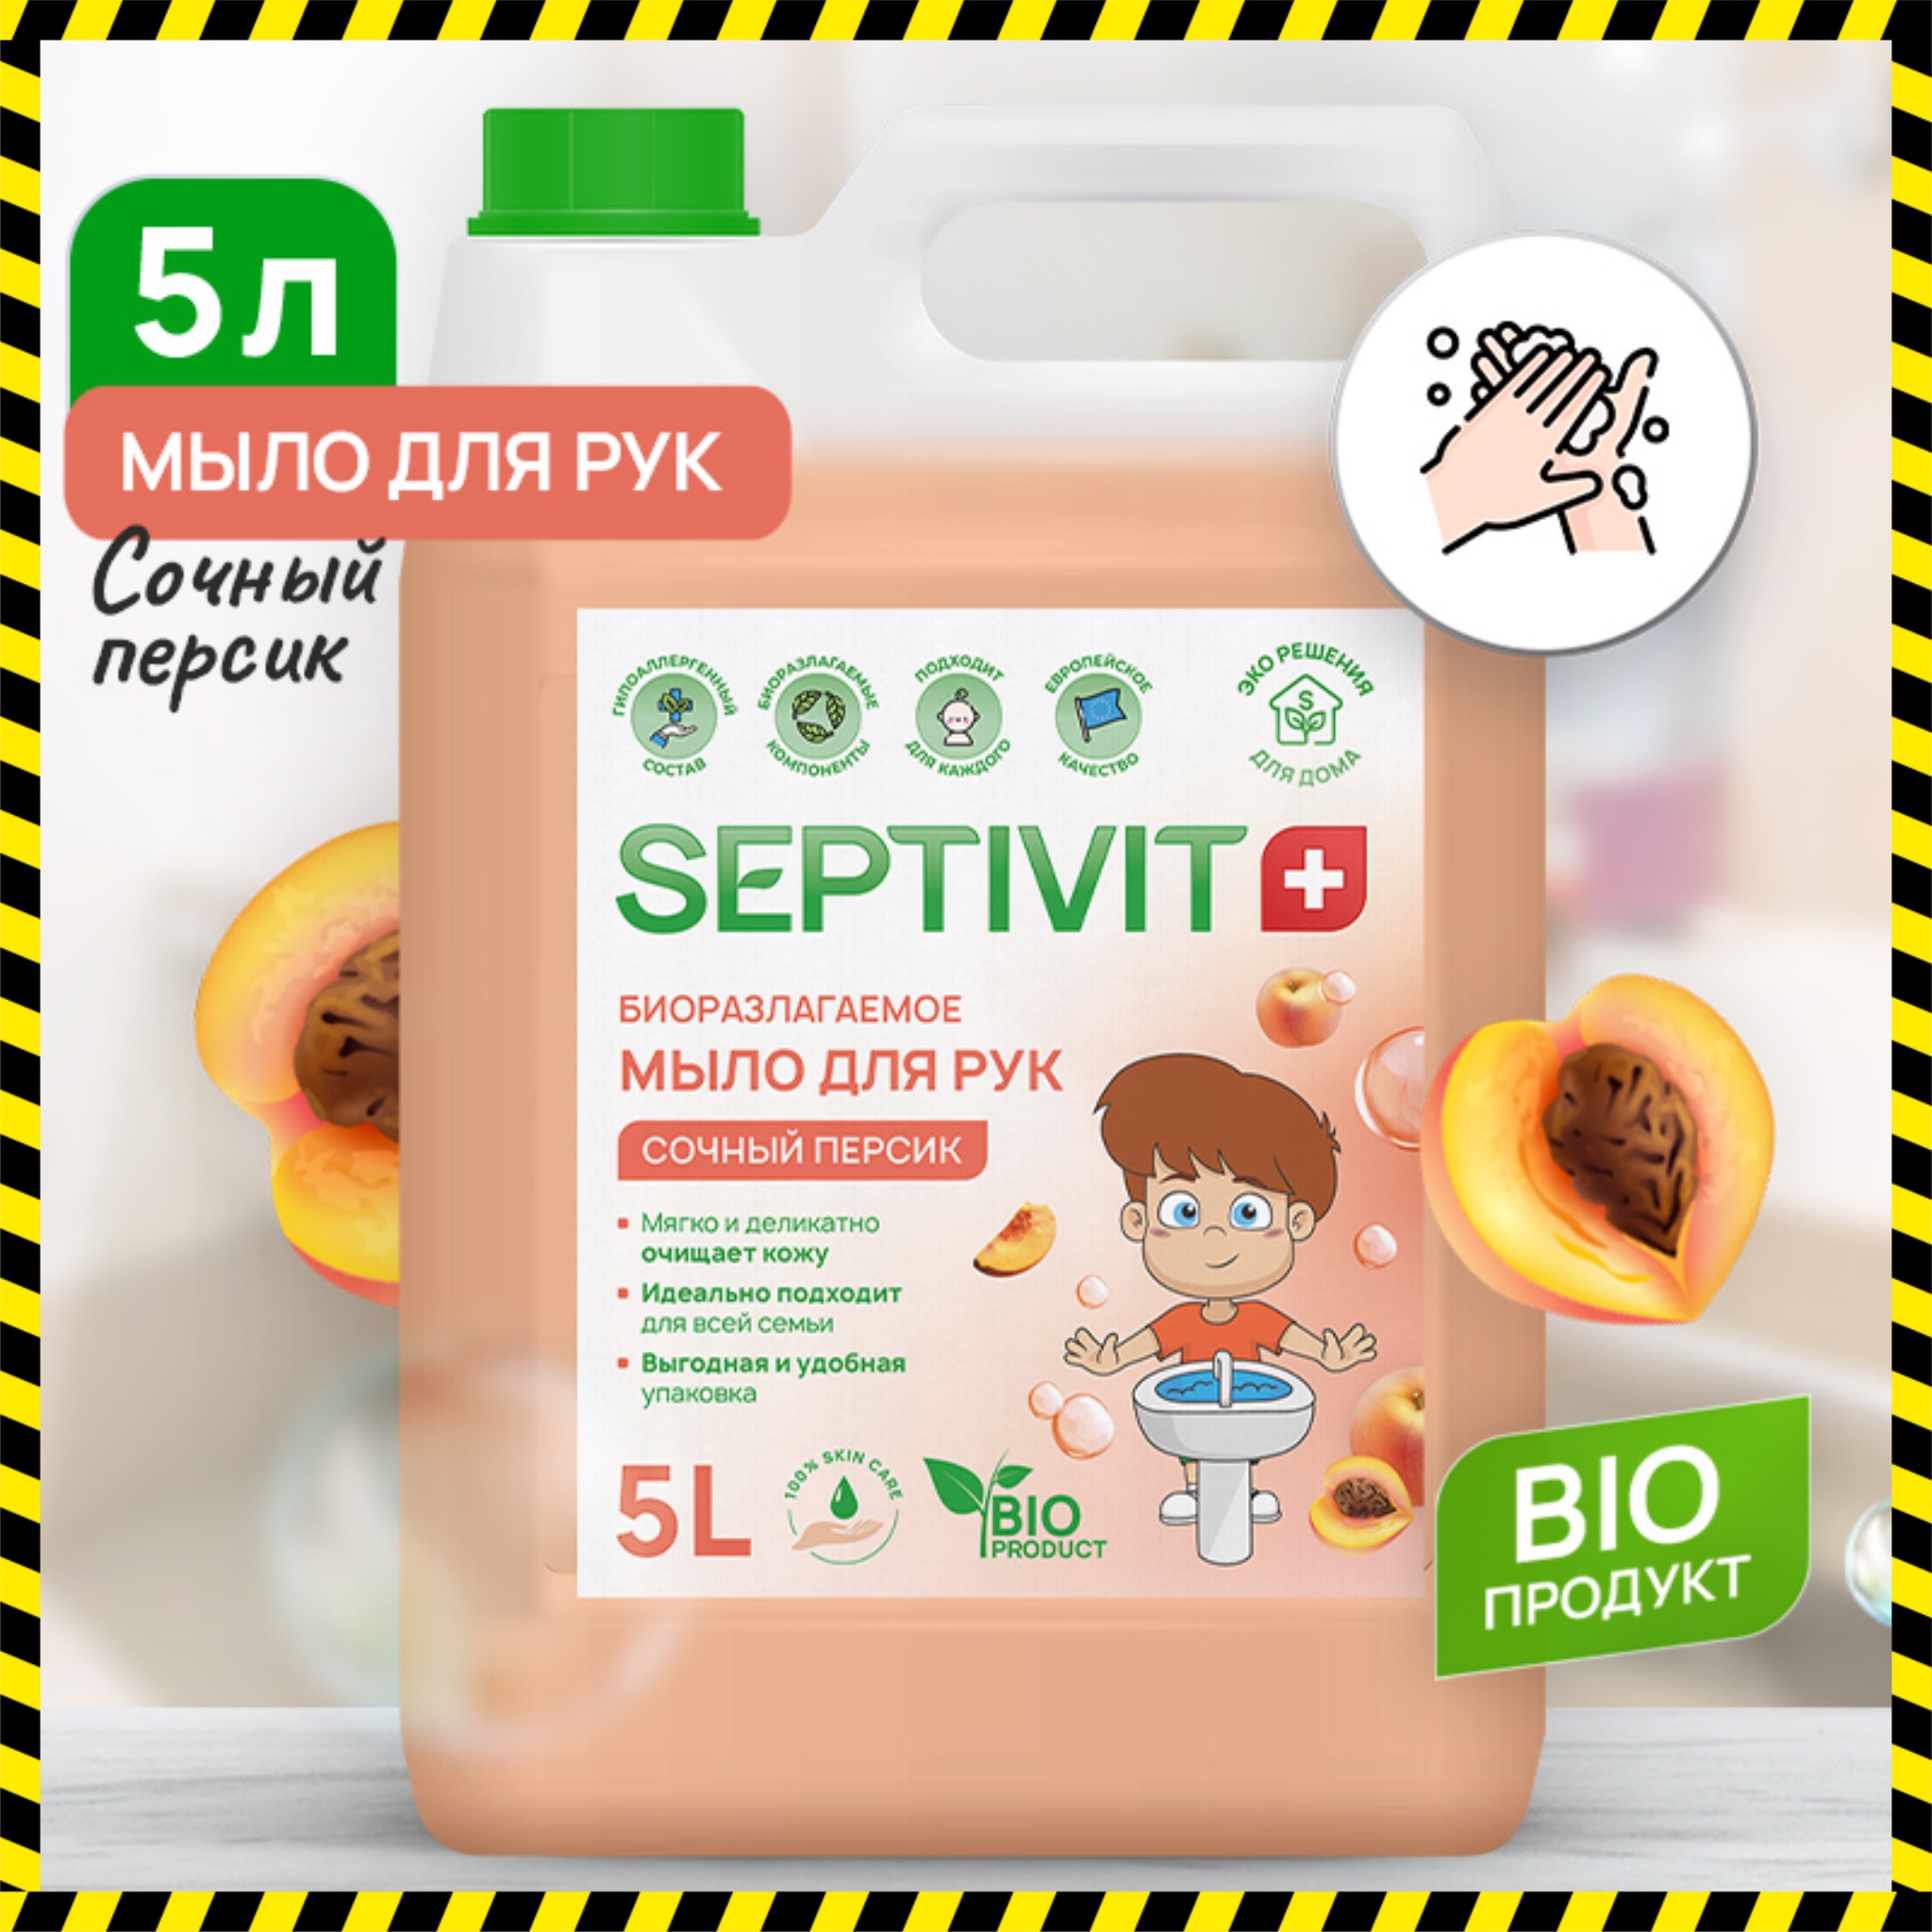 Жидкое мыло для рук Сочный персик Septivit Premium 5л lappino шампунь детский для новорожденных жидкое мыло детское